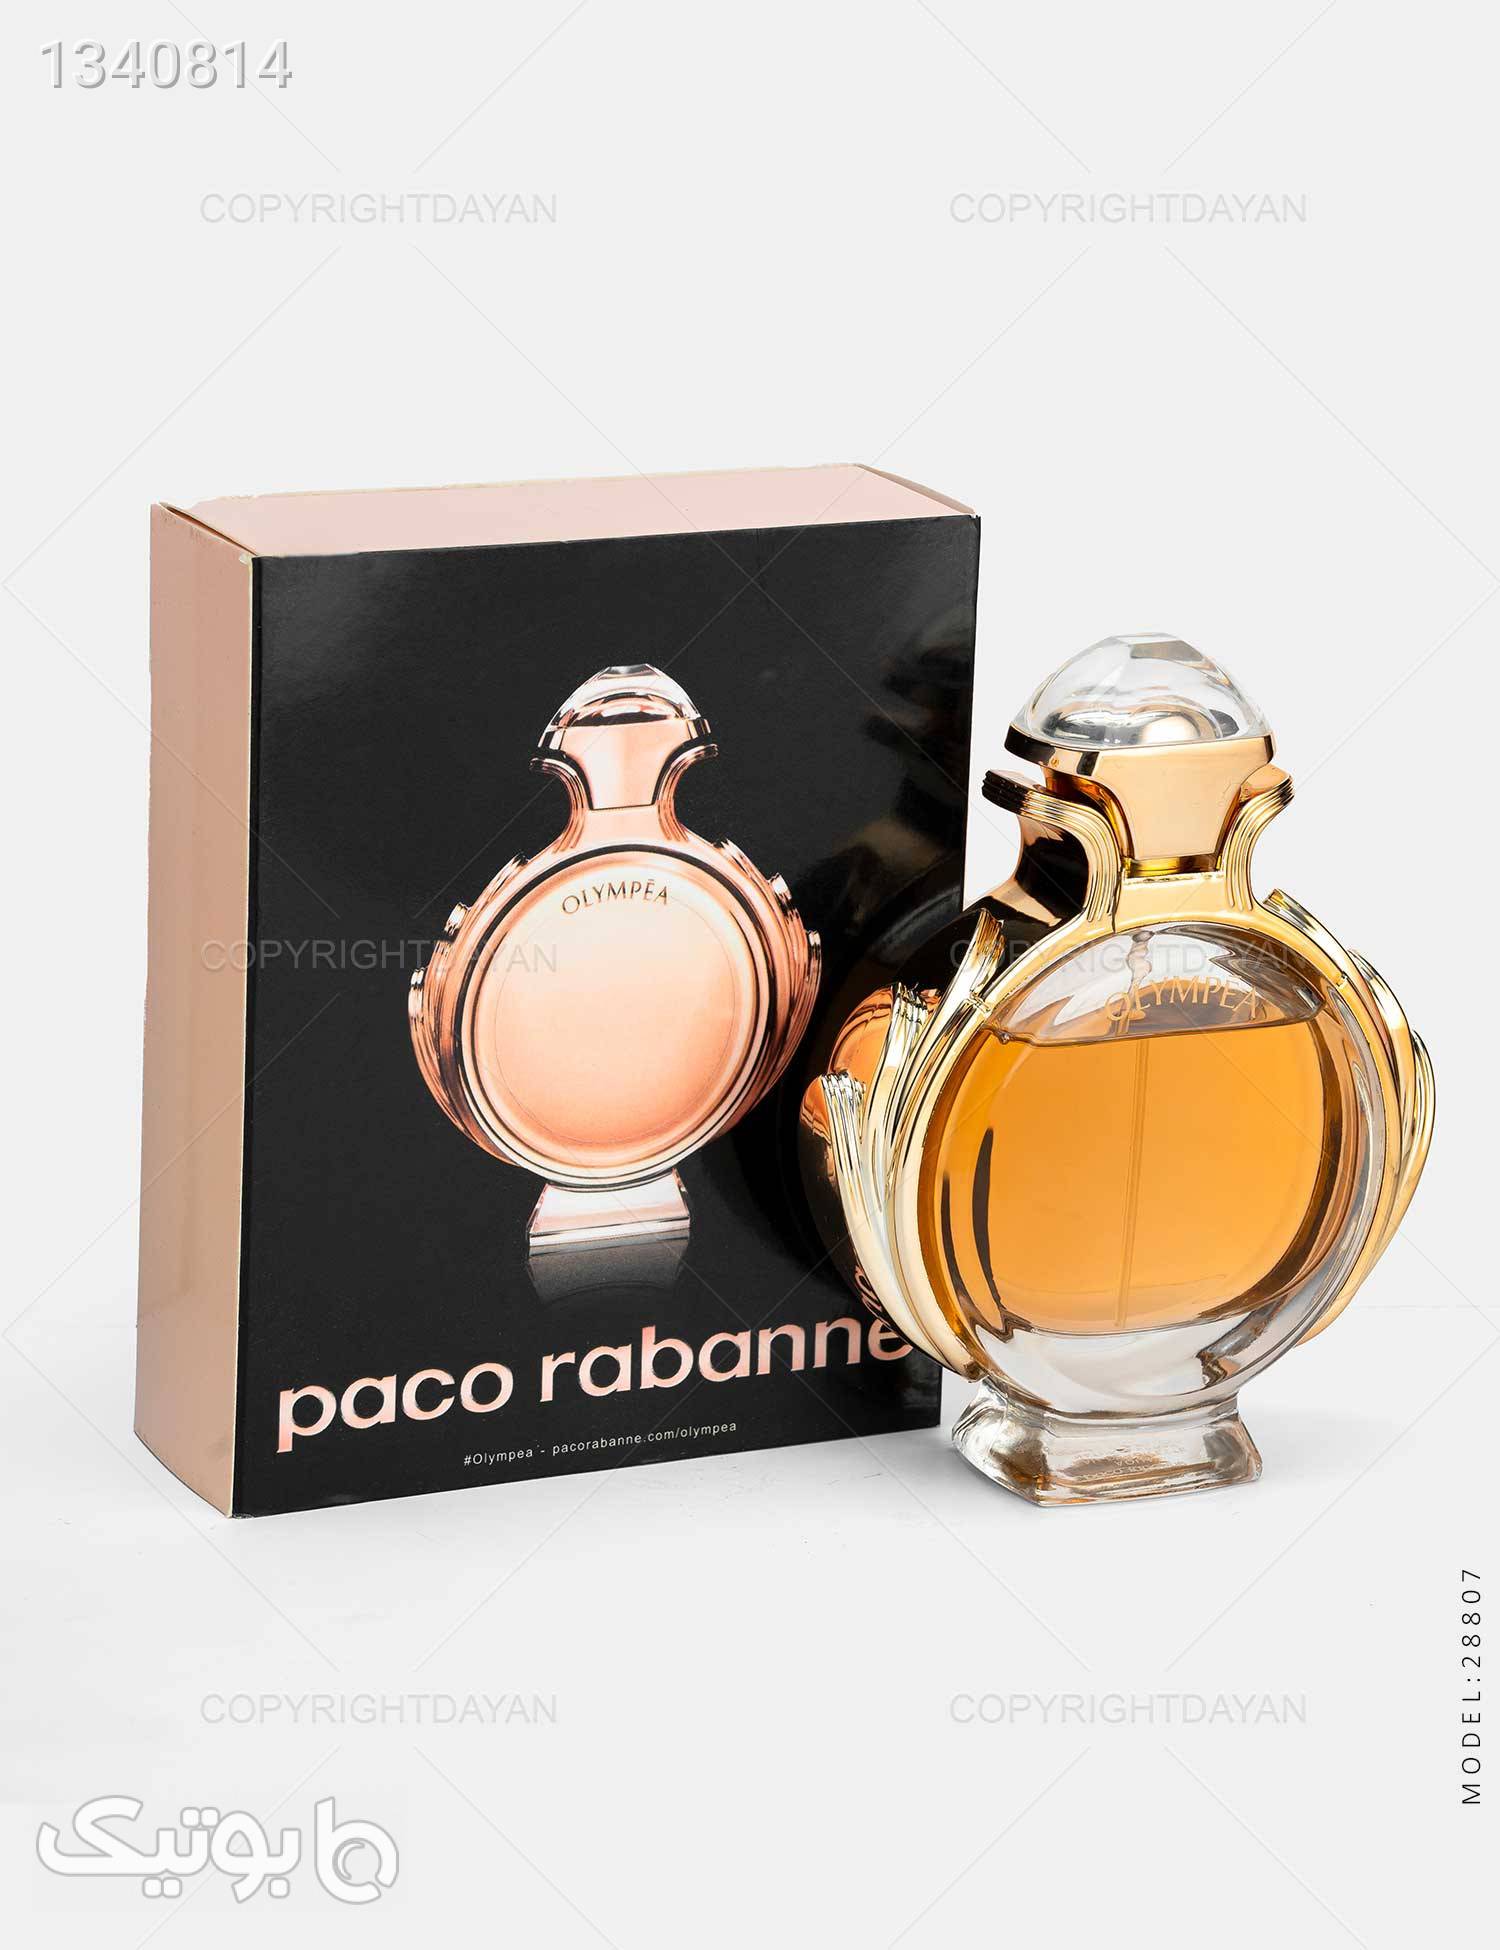 ادکلن زنانه Paco Rabanne مدل 28807 نارنجی عطر و ادکلن